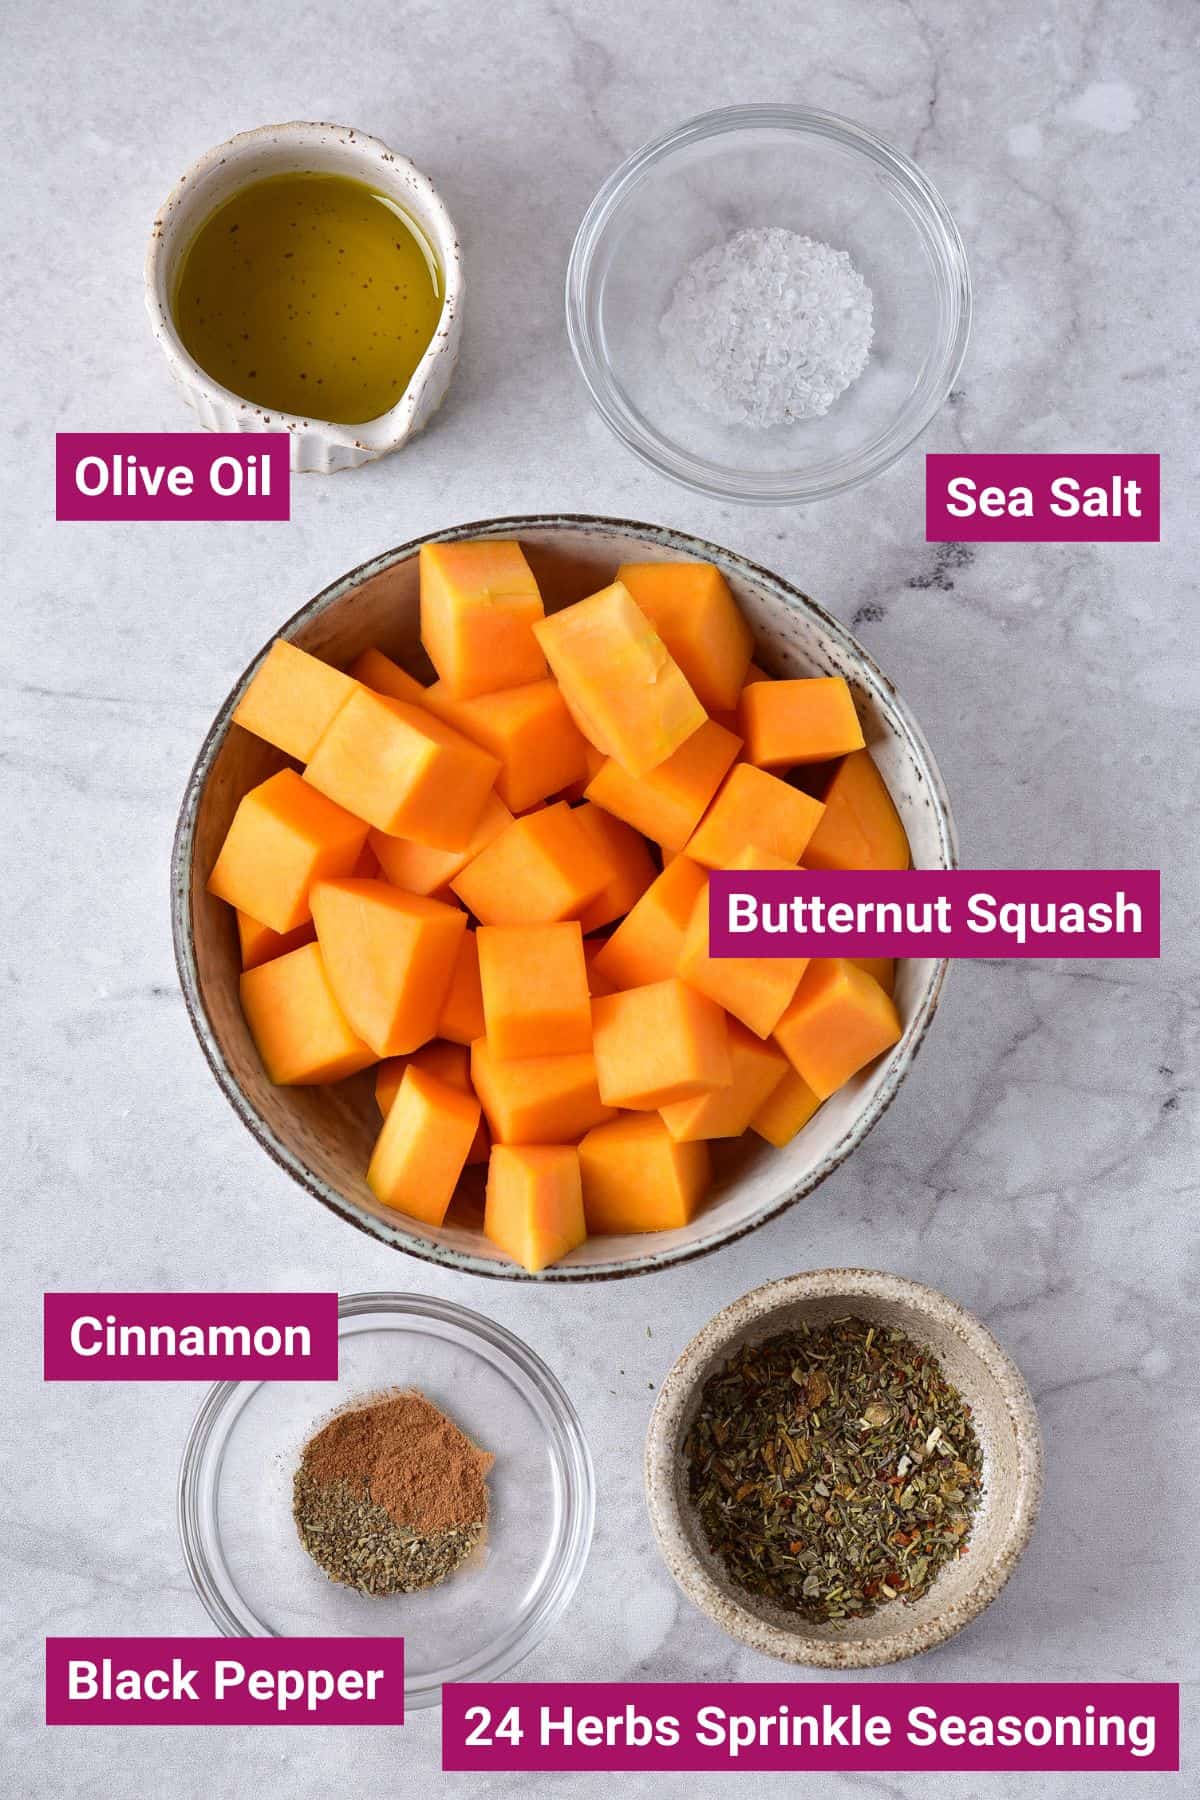 ingredients needed to air fry butternut squash: olive oil, sea salt, diced butternut squash, cinnamon, black pepper, herb sprinkle seasoning on separate bowls